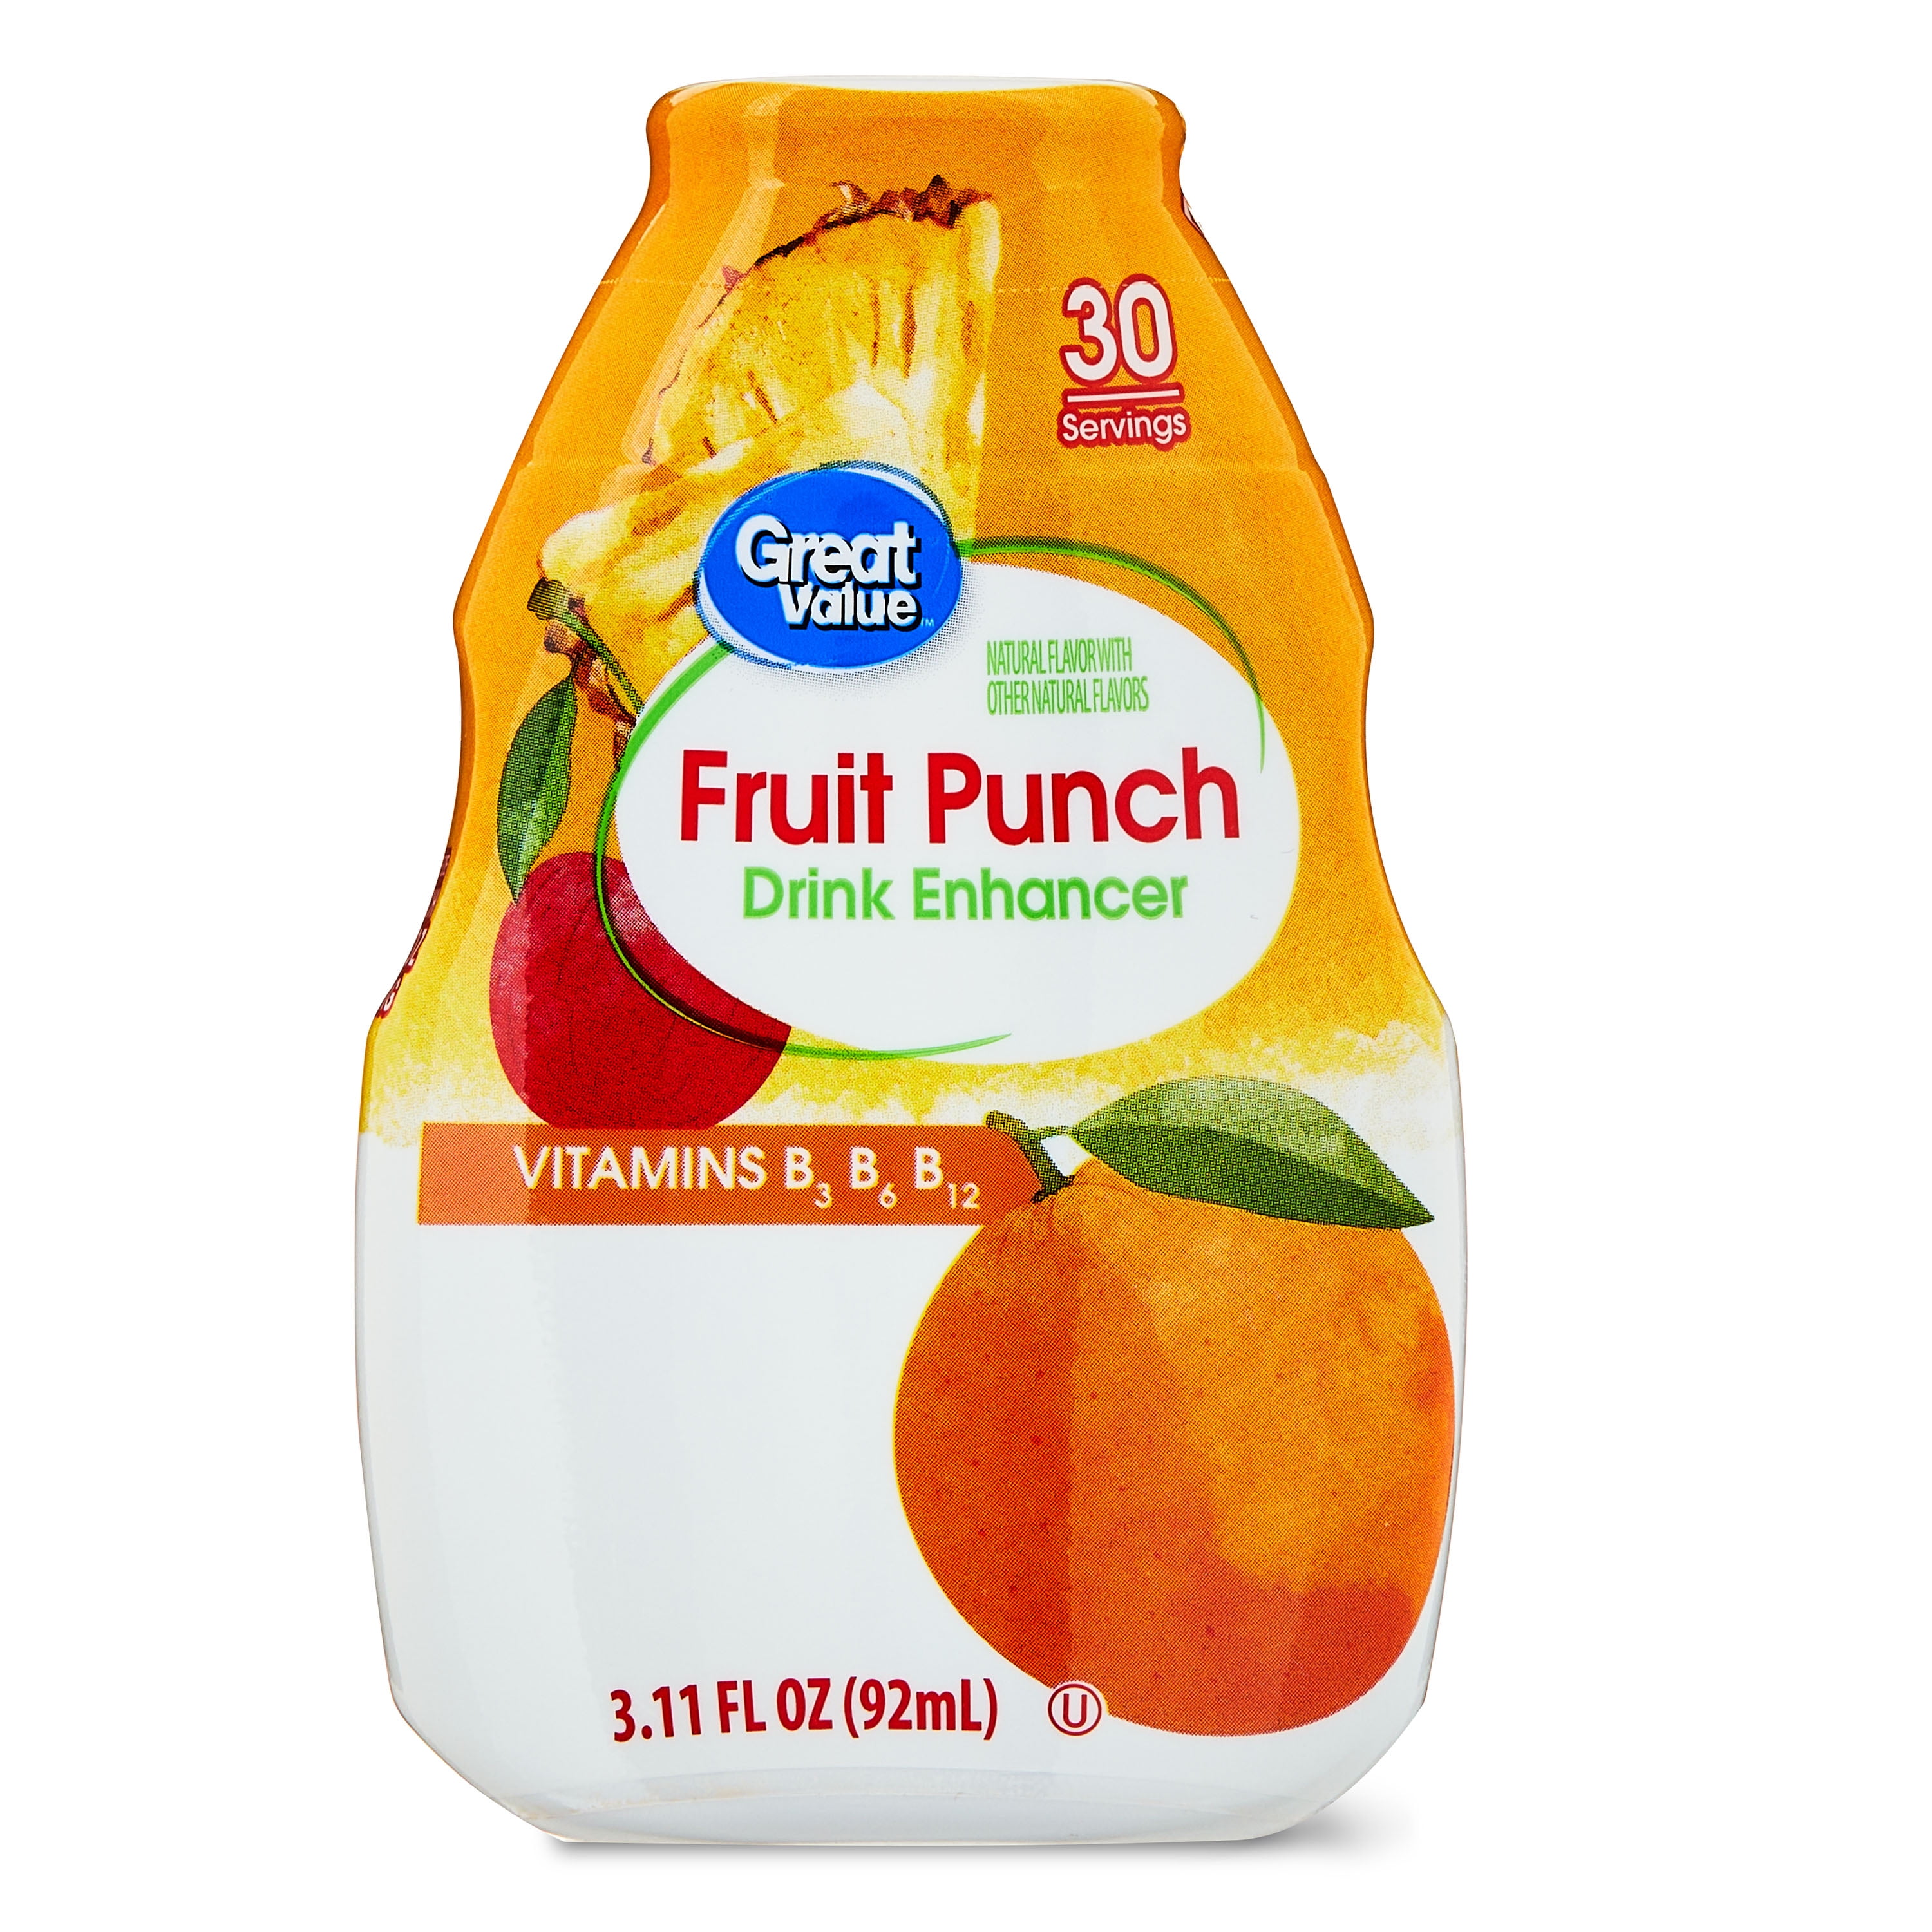 Stur Hydration + Fruit Punch Drink Mix - Shop Mixes & Flavor